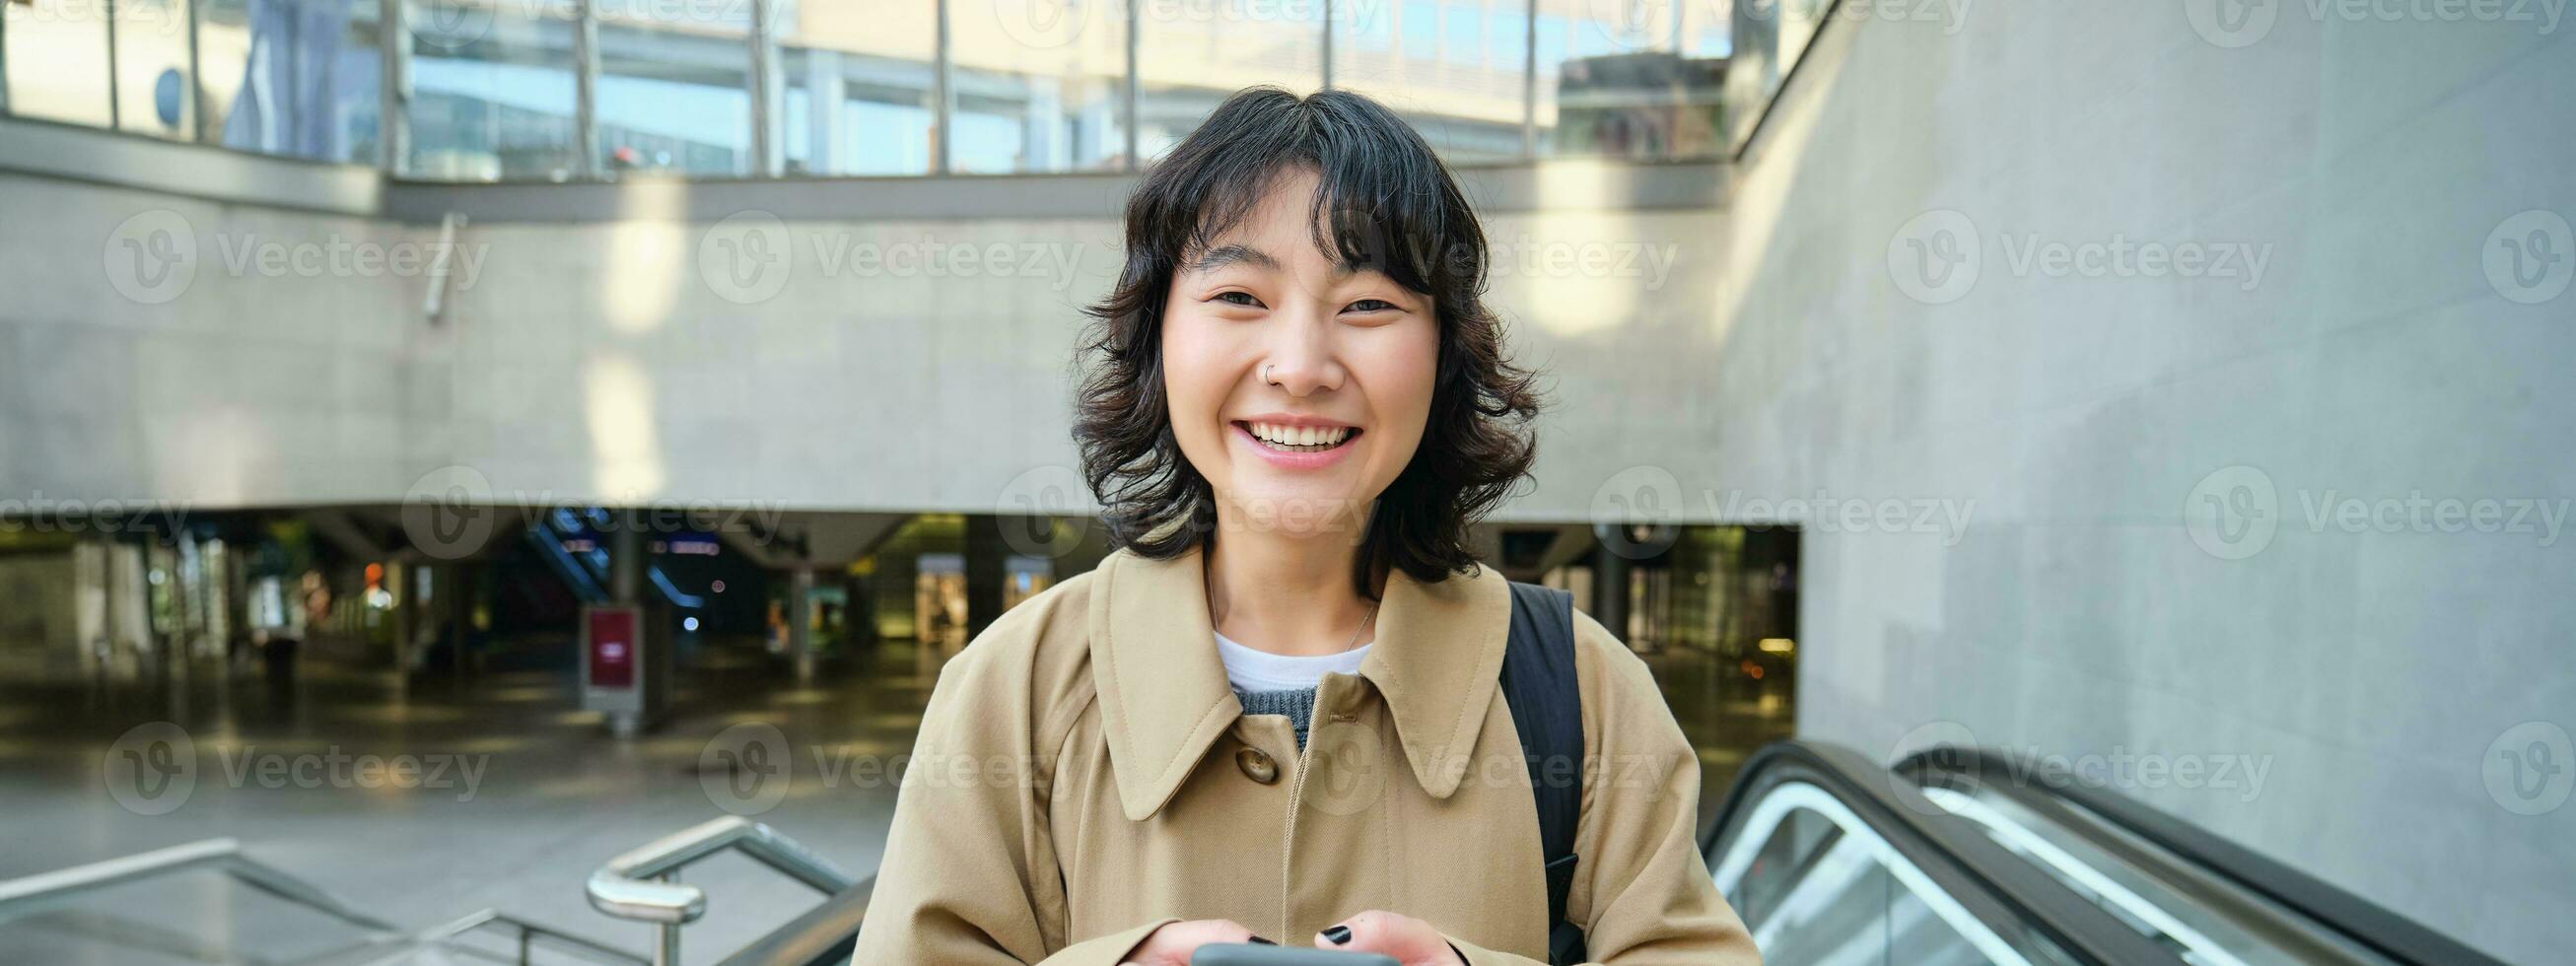 personas en ciudad. joven coreano mujer viajes alrededor ciudad, va arriba el escalera mecánica, usos su móvil teléfono y sonrisas foto